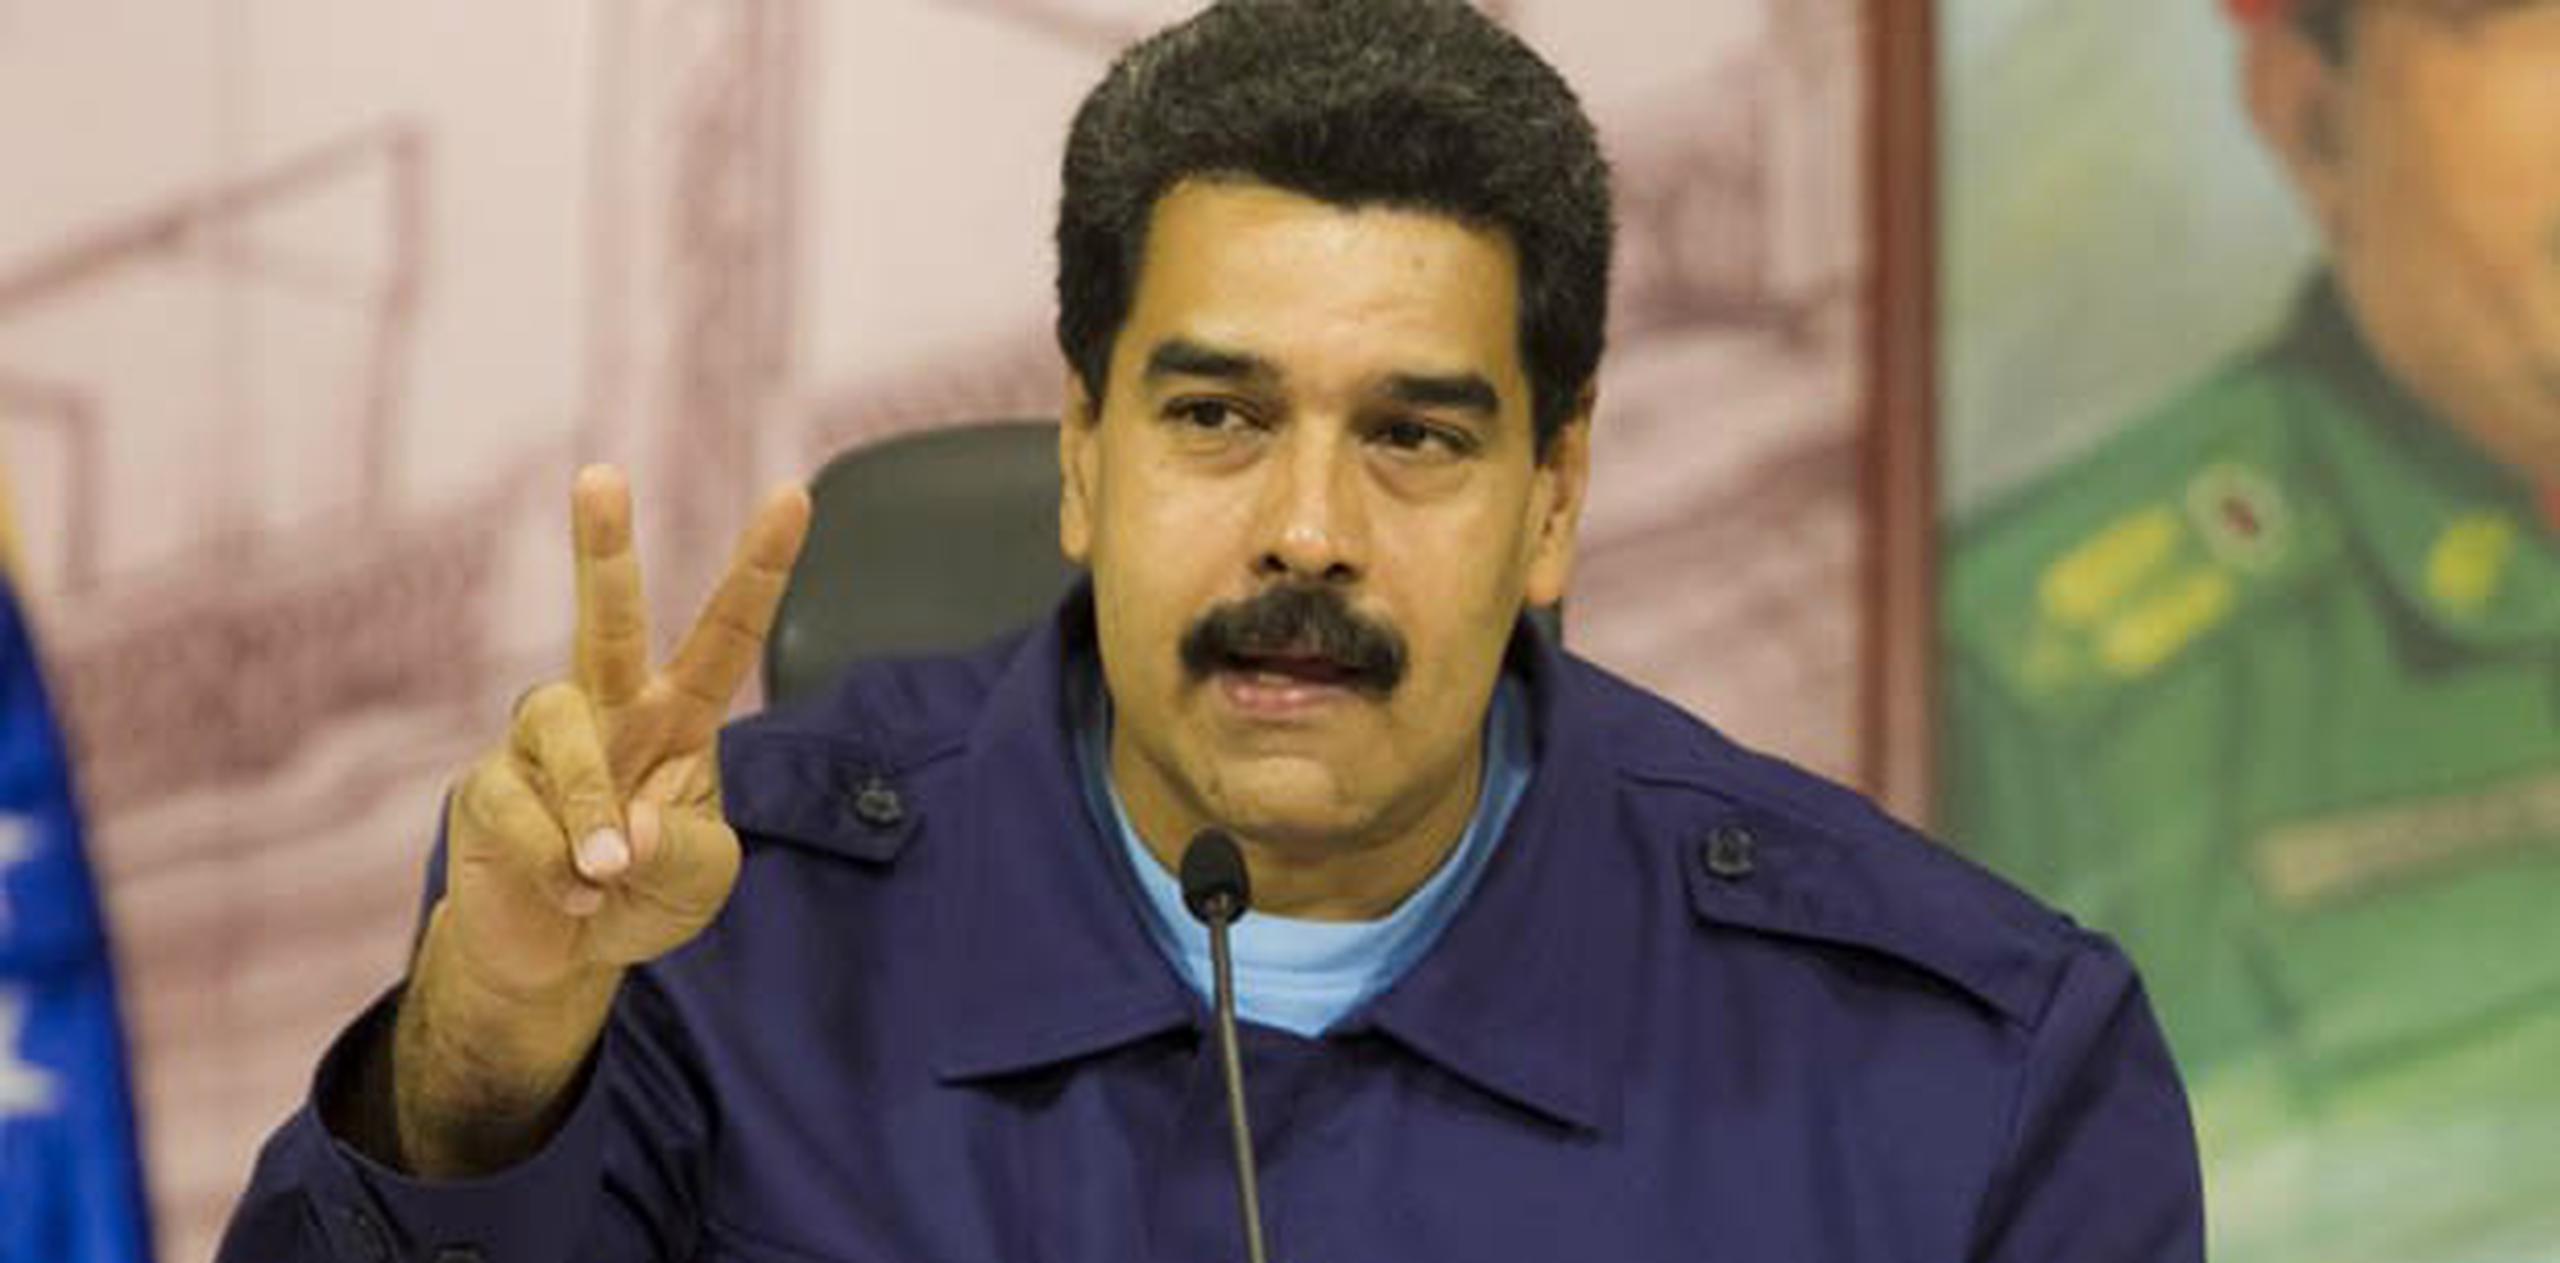 El presidente Nicolás Maduro ha rechazado las protestas considerándolas parte de un plan de la oposición para promover un golpe de Estado alentado por Estados Unidos. (EFE)